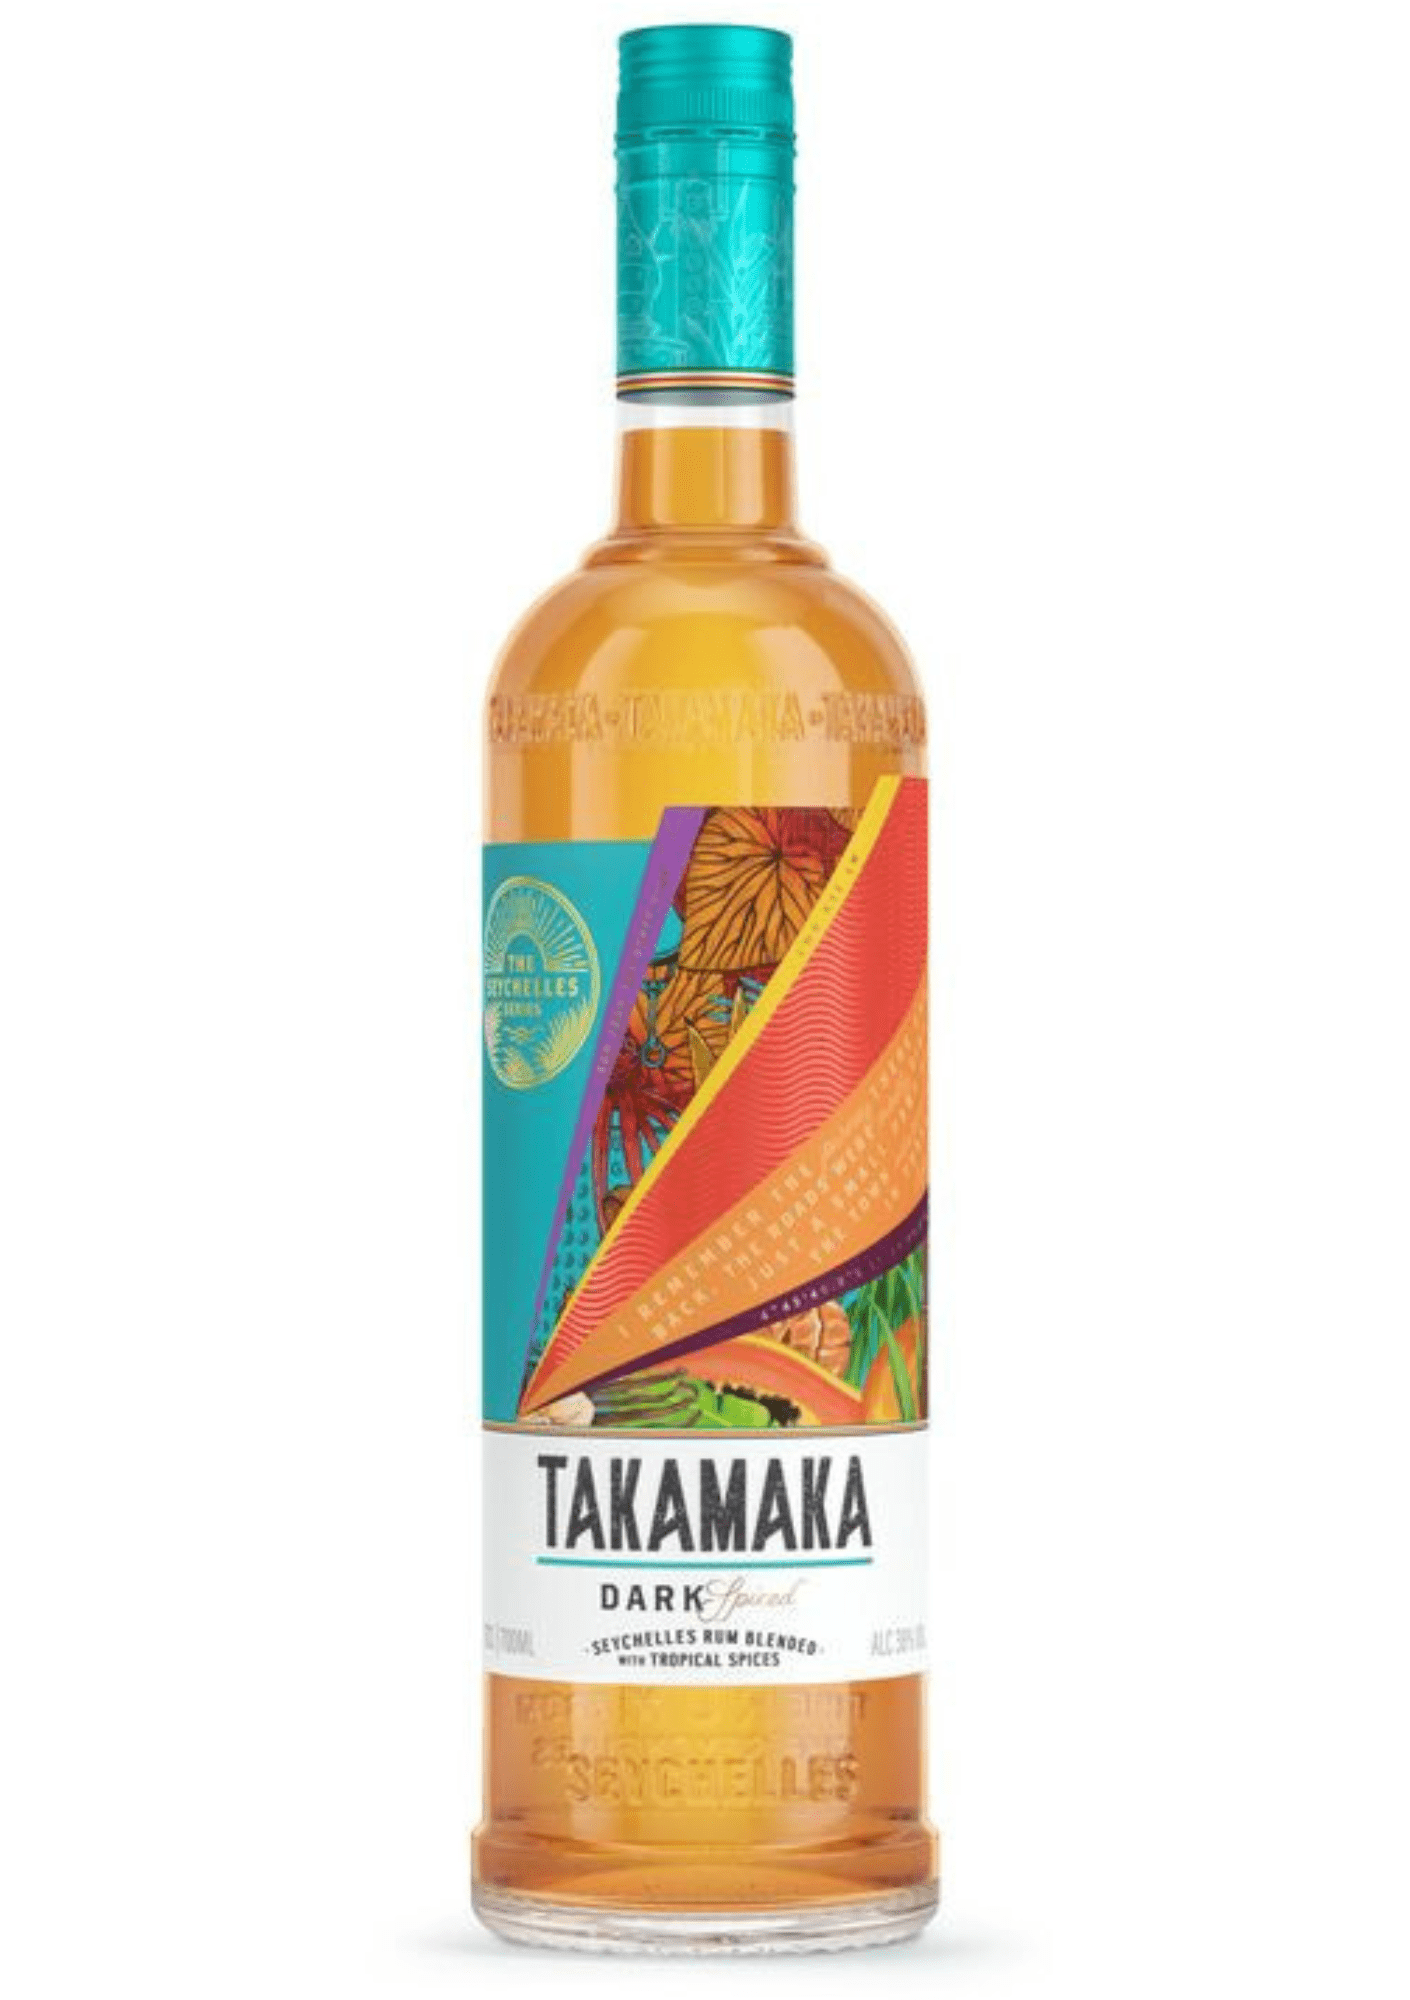 Takamaka Dark Spiced 38% 0,7l